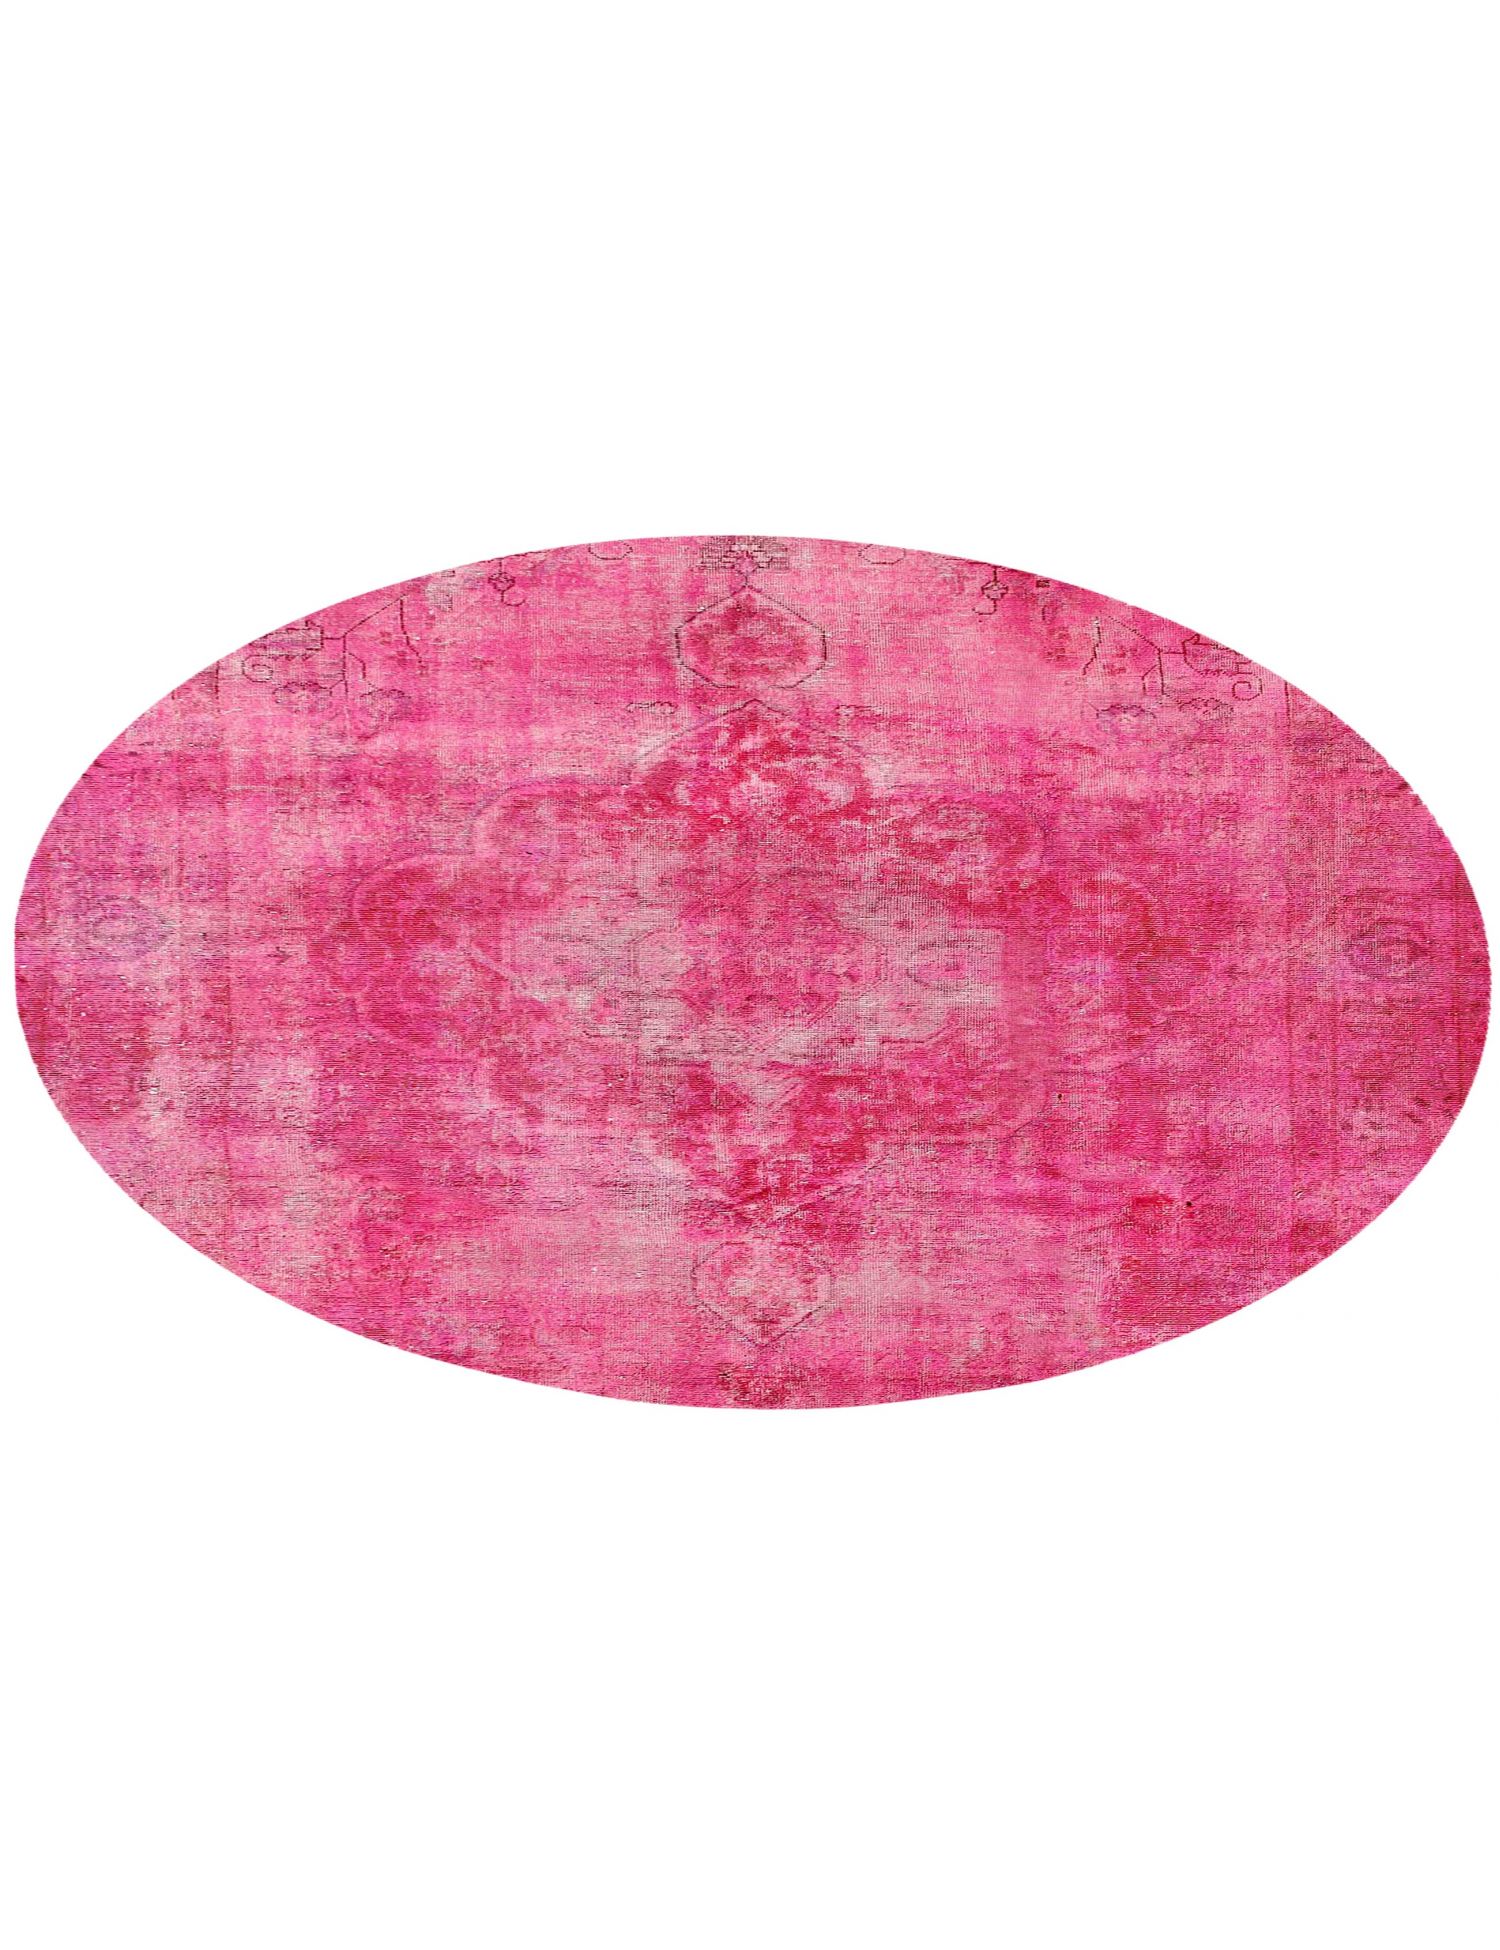 Rund  Vintage Teppich  rosa <br/>290 x 290 cm